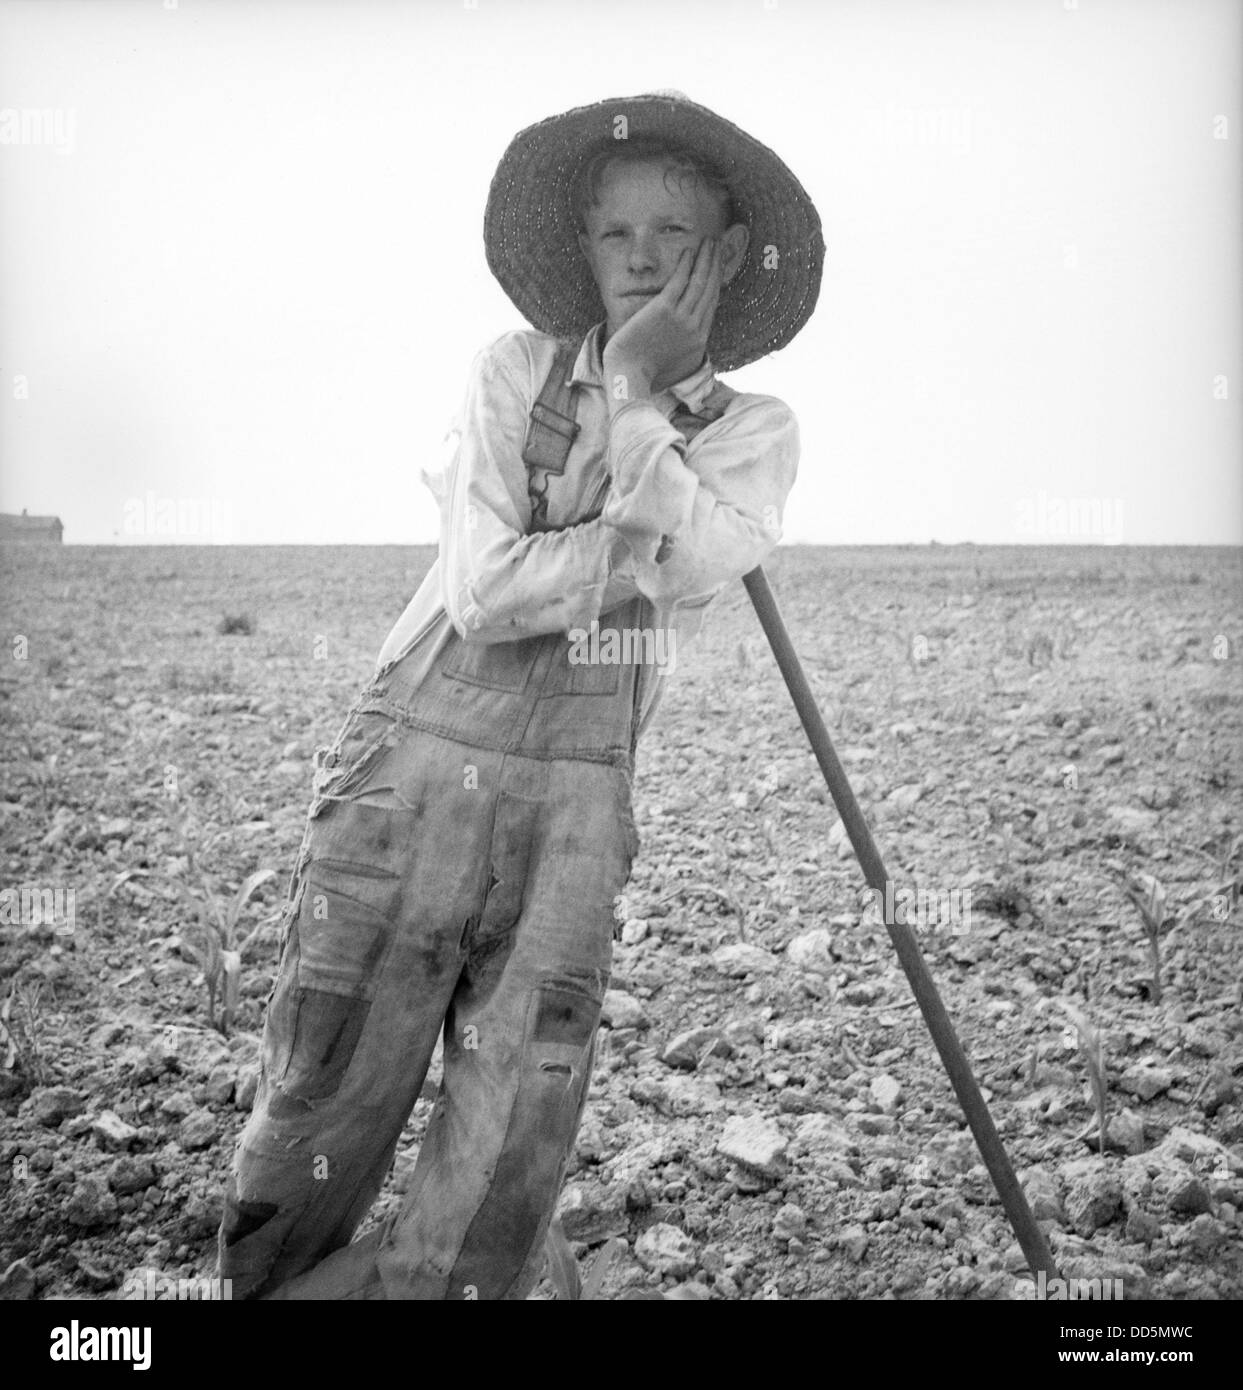 Arme weiße Bauernjunge stützte sich auf seine Hacke in North Carolina. Juli 1936. Foto von Dorothea Lange. (BSLOC 2013 6 87) Stockfoto